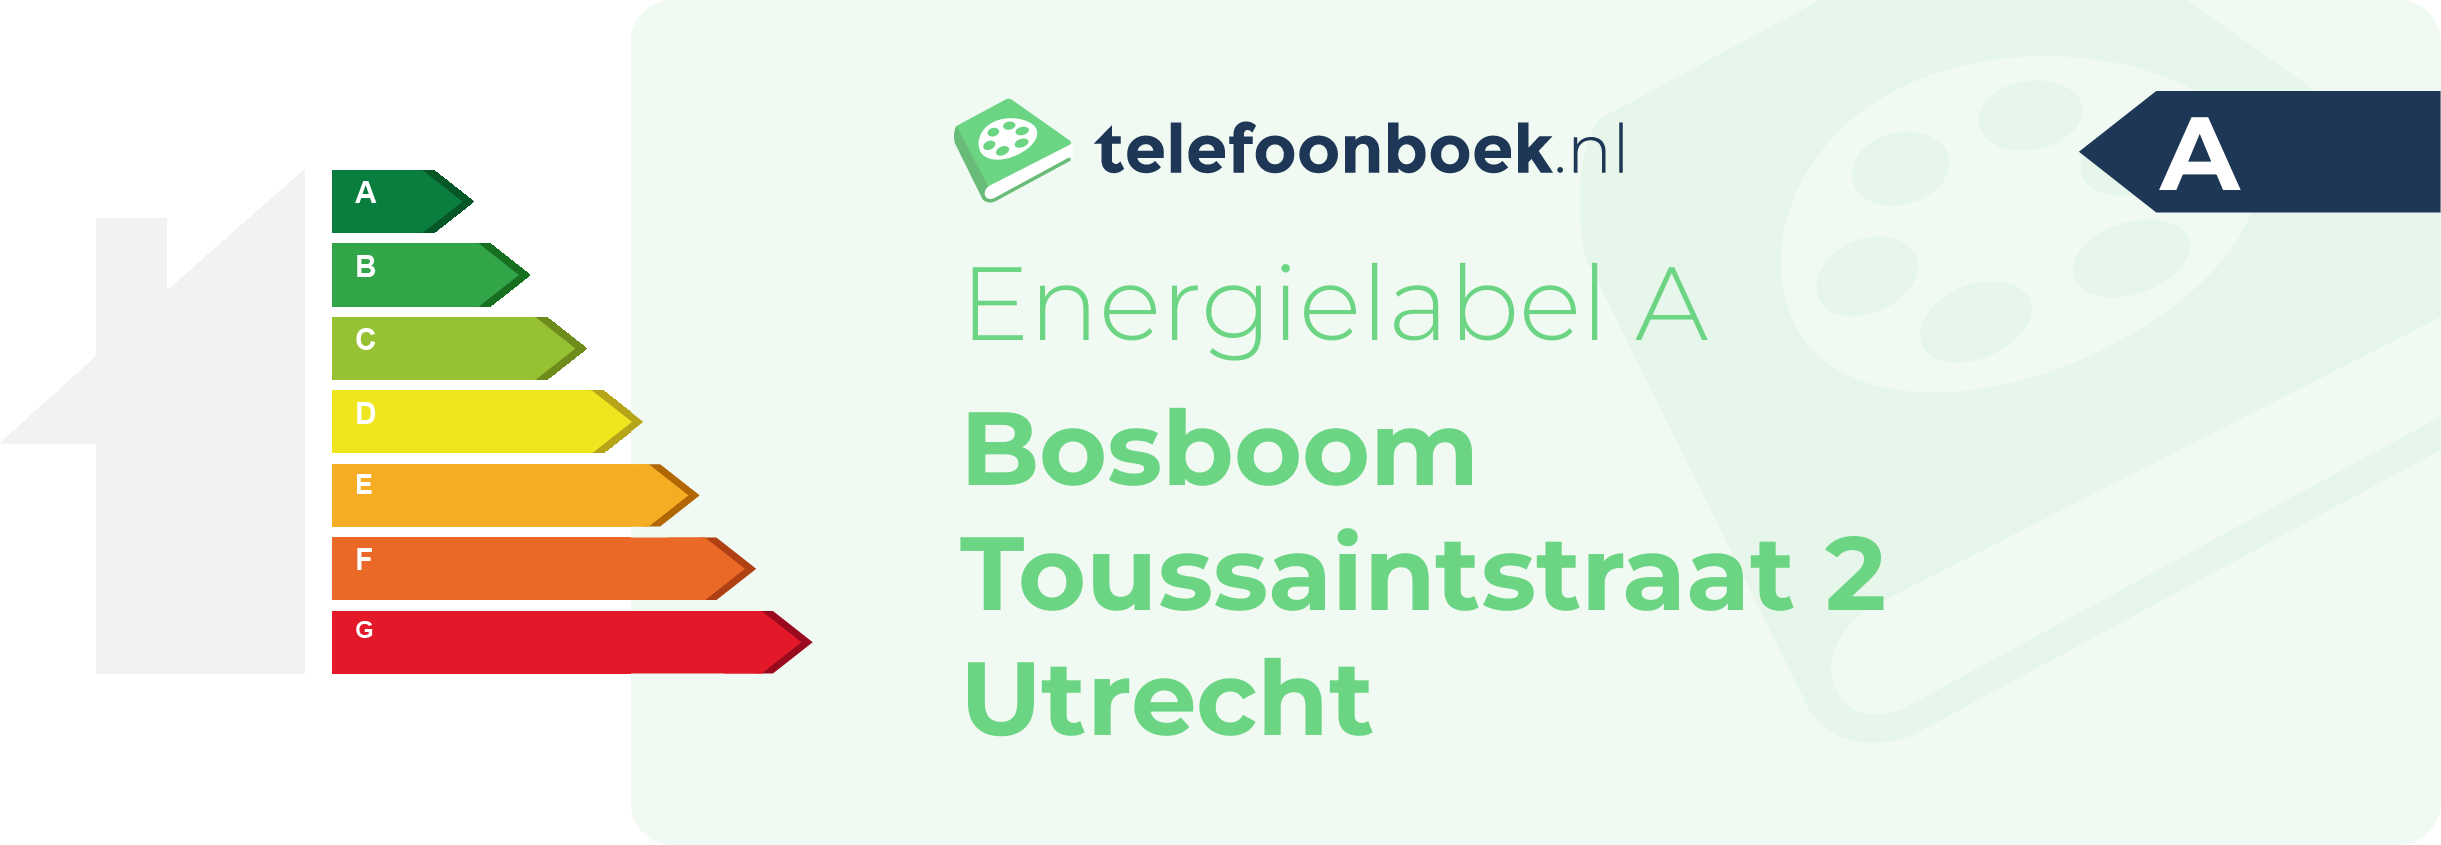 Energielabel Bosboom Toussaintstraat 2 Utrecht